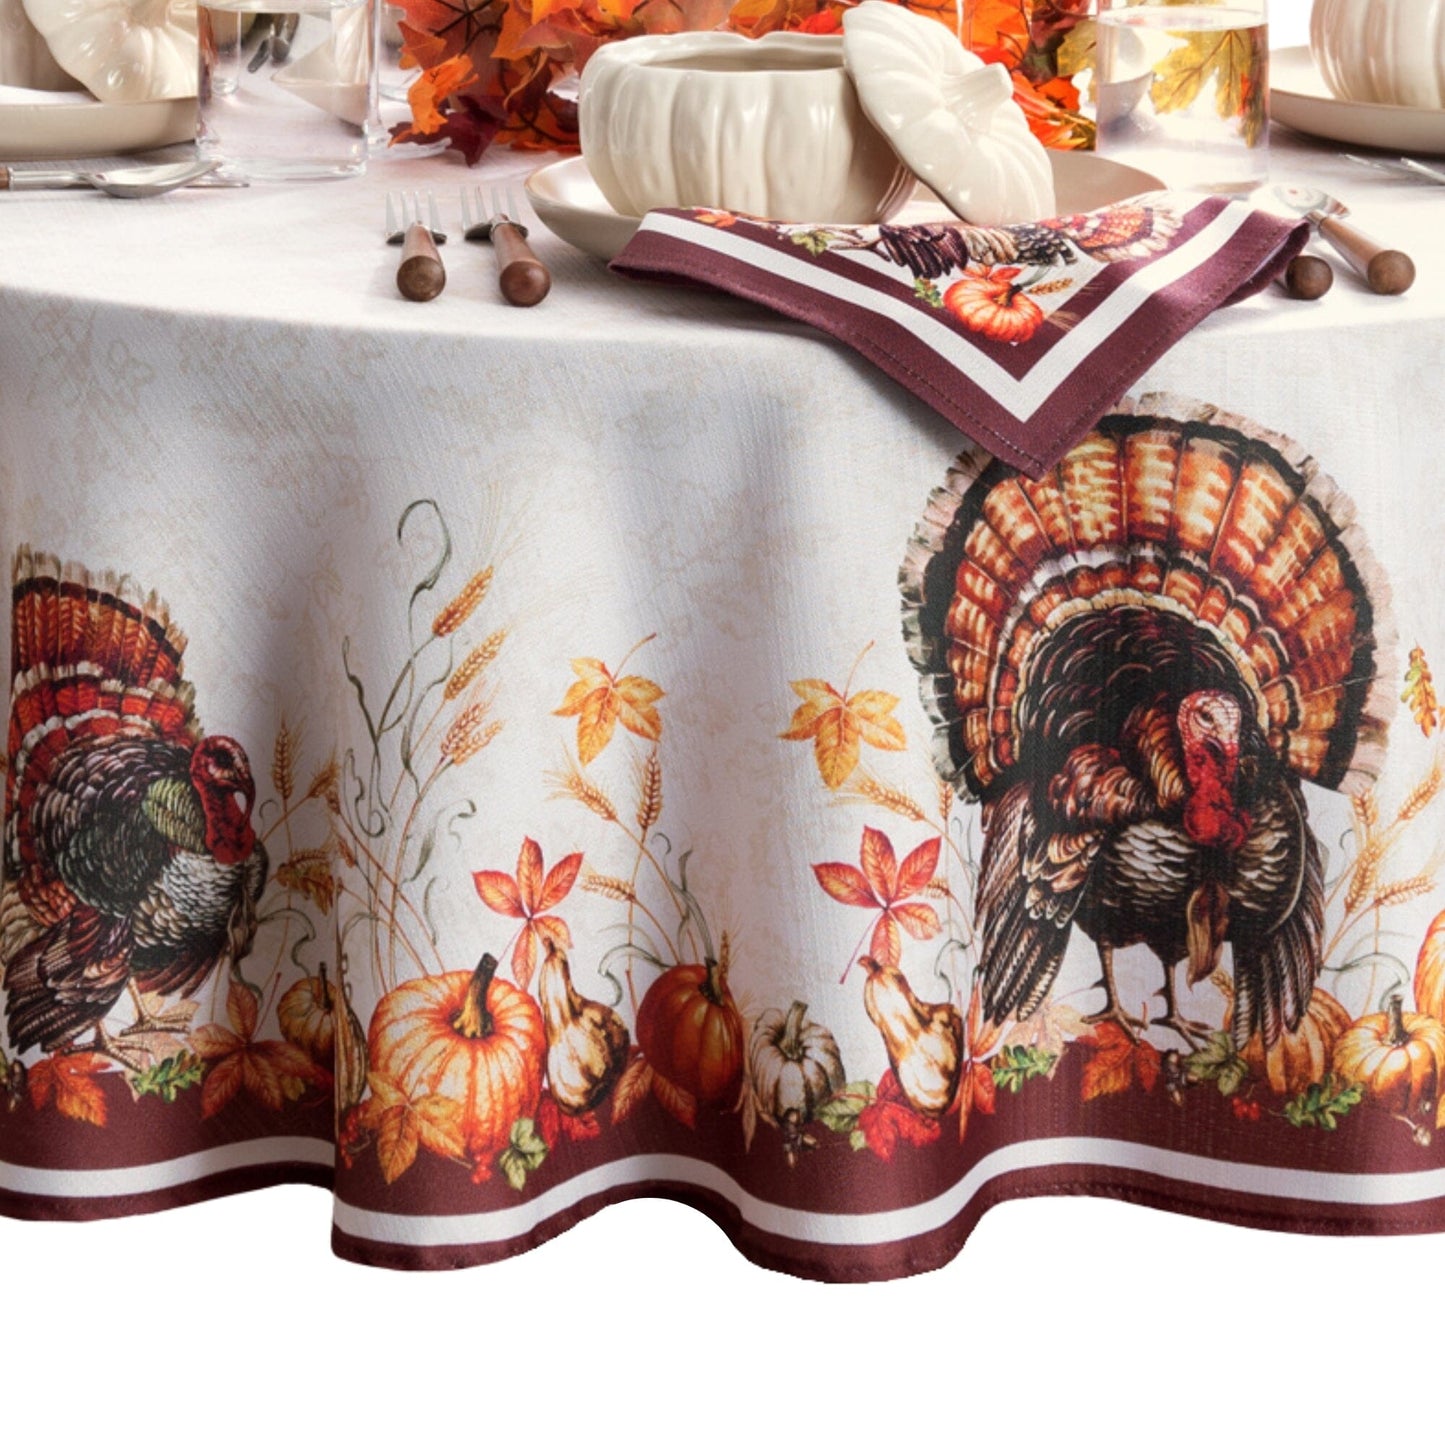 Autumn Heritage Turkey Engineered Tablecloth – Elrene Home Fashions